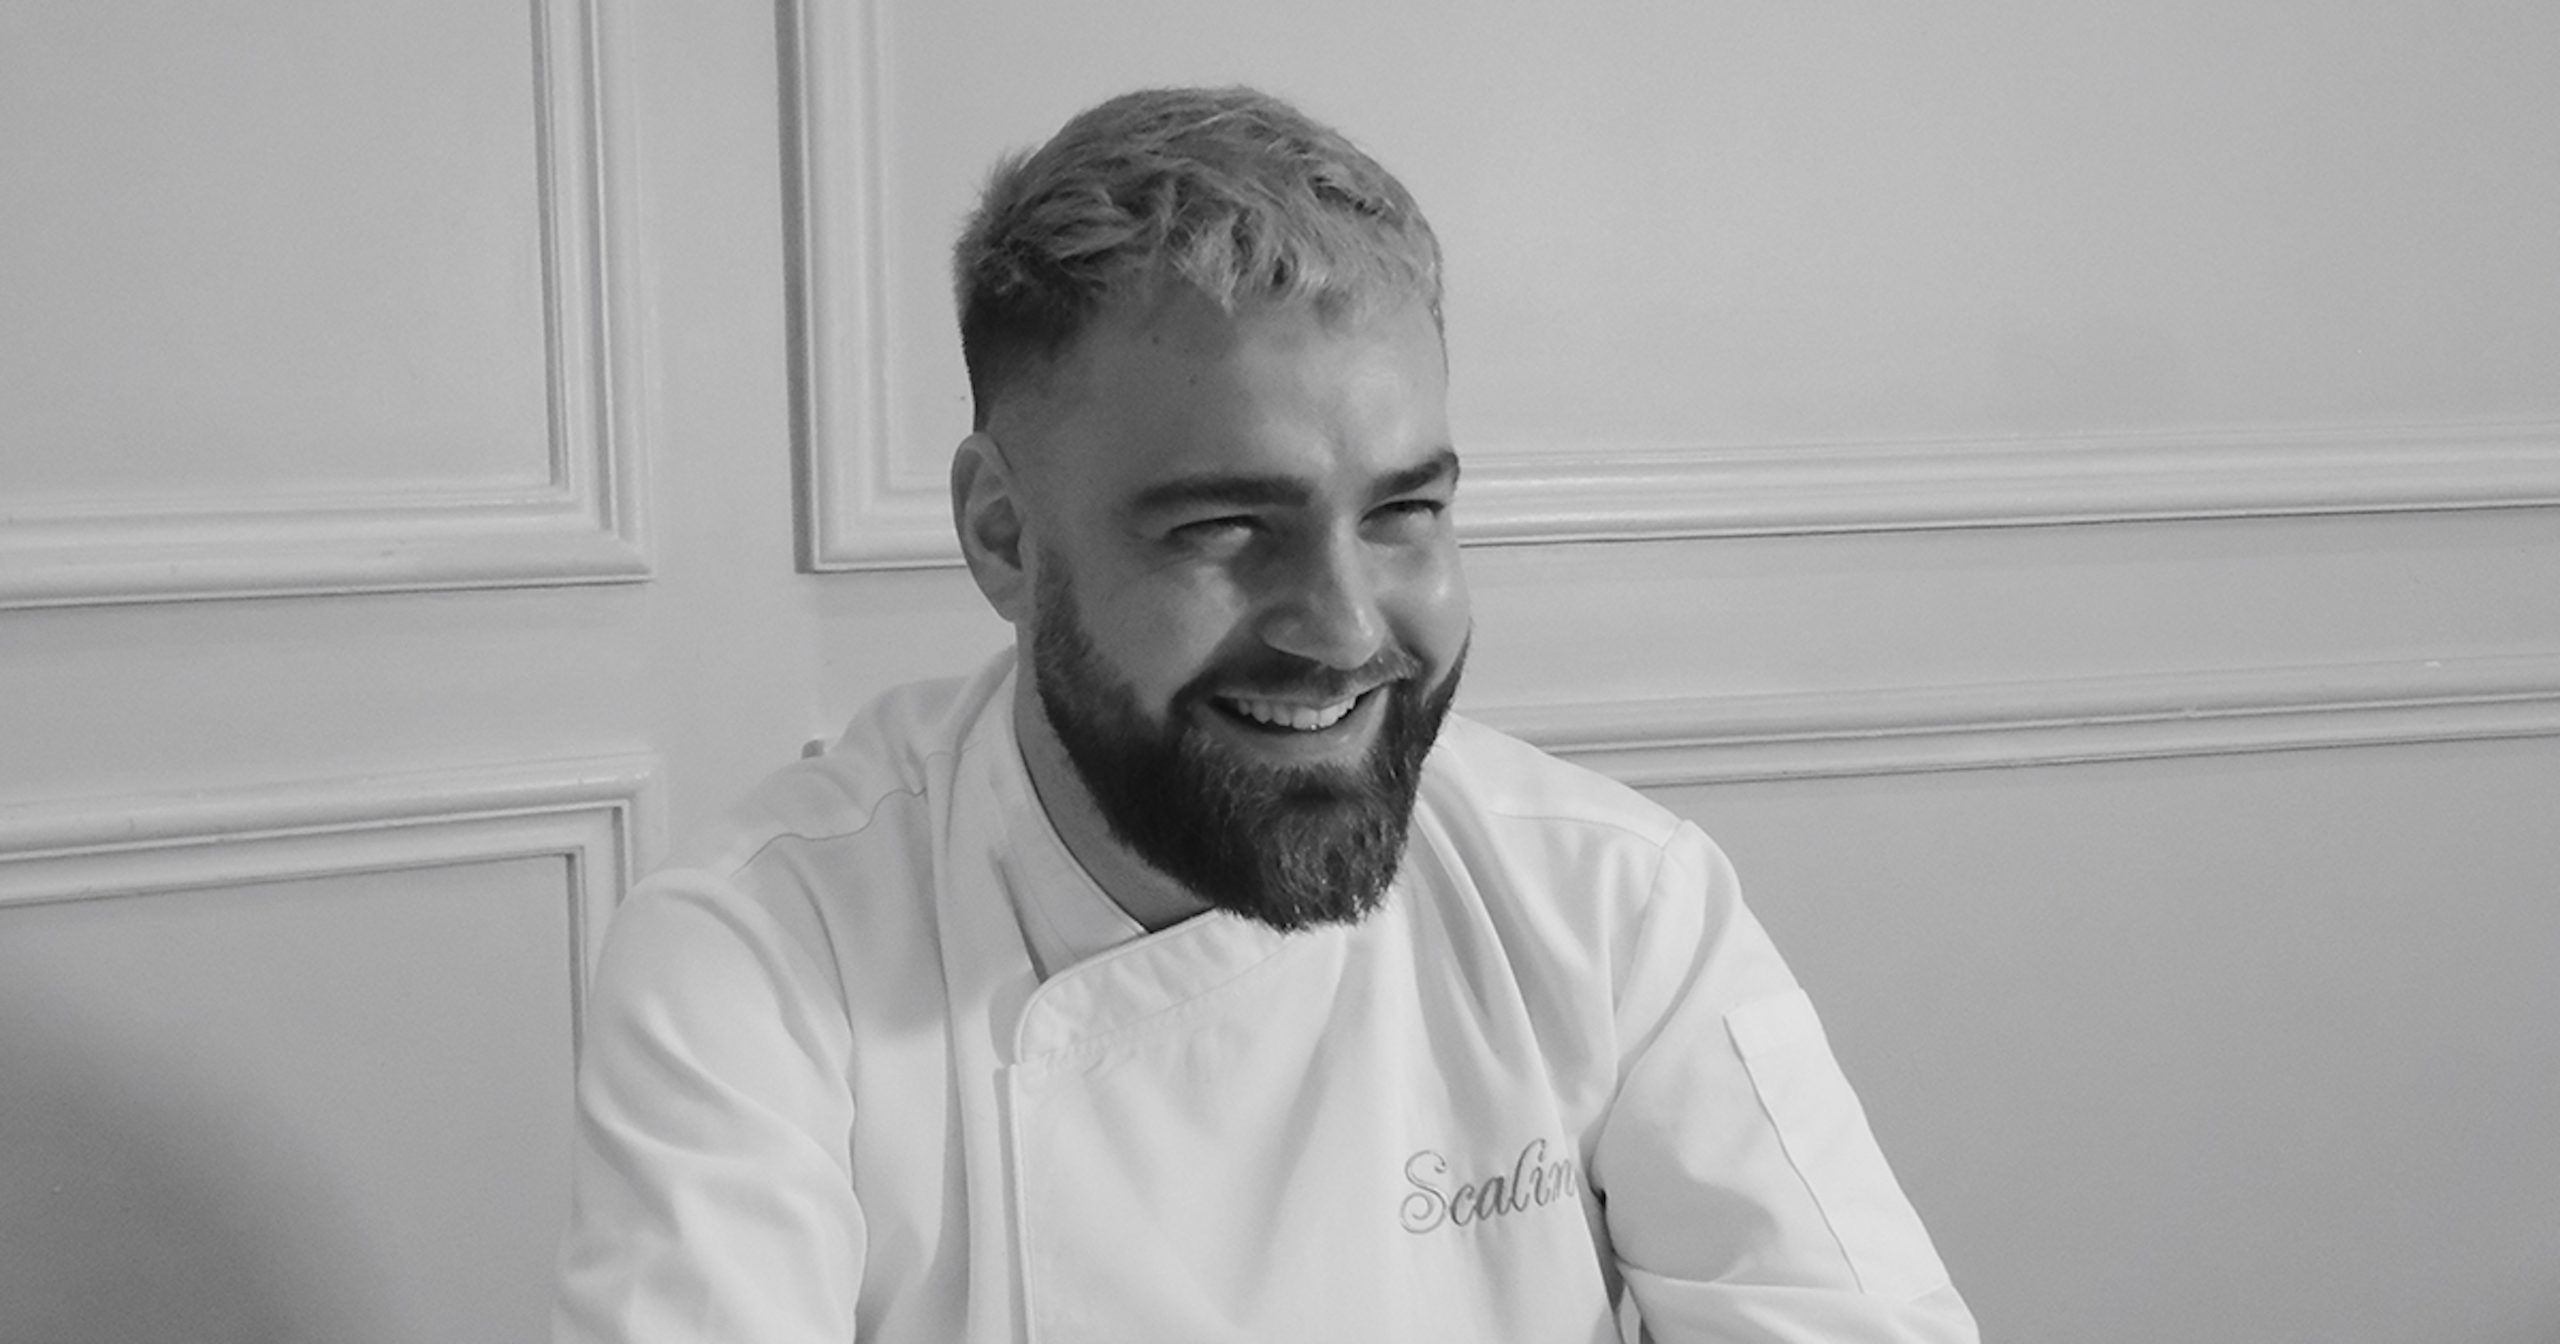 Francesco-Cortorillo-Executive-Chef-at-Scalini-Dubai